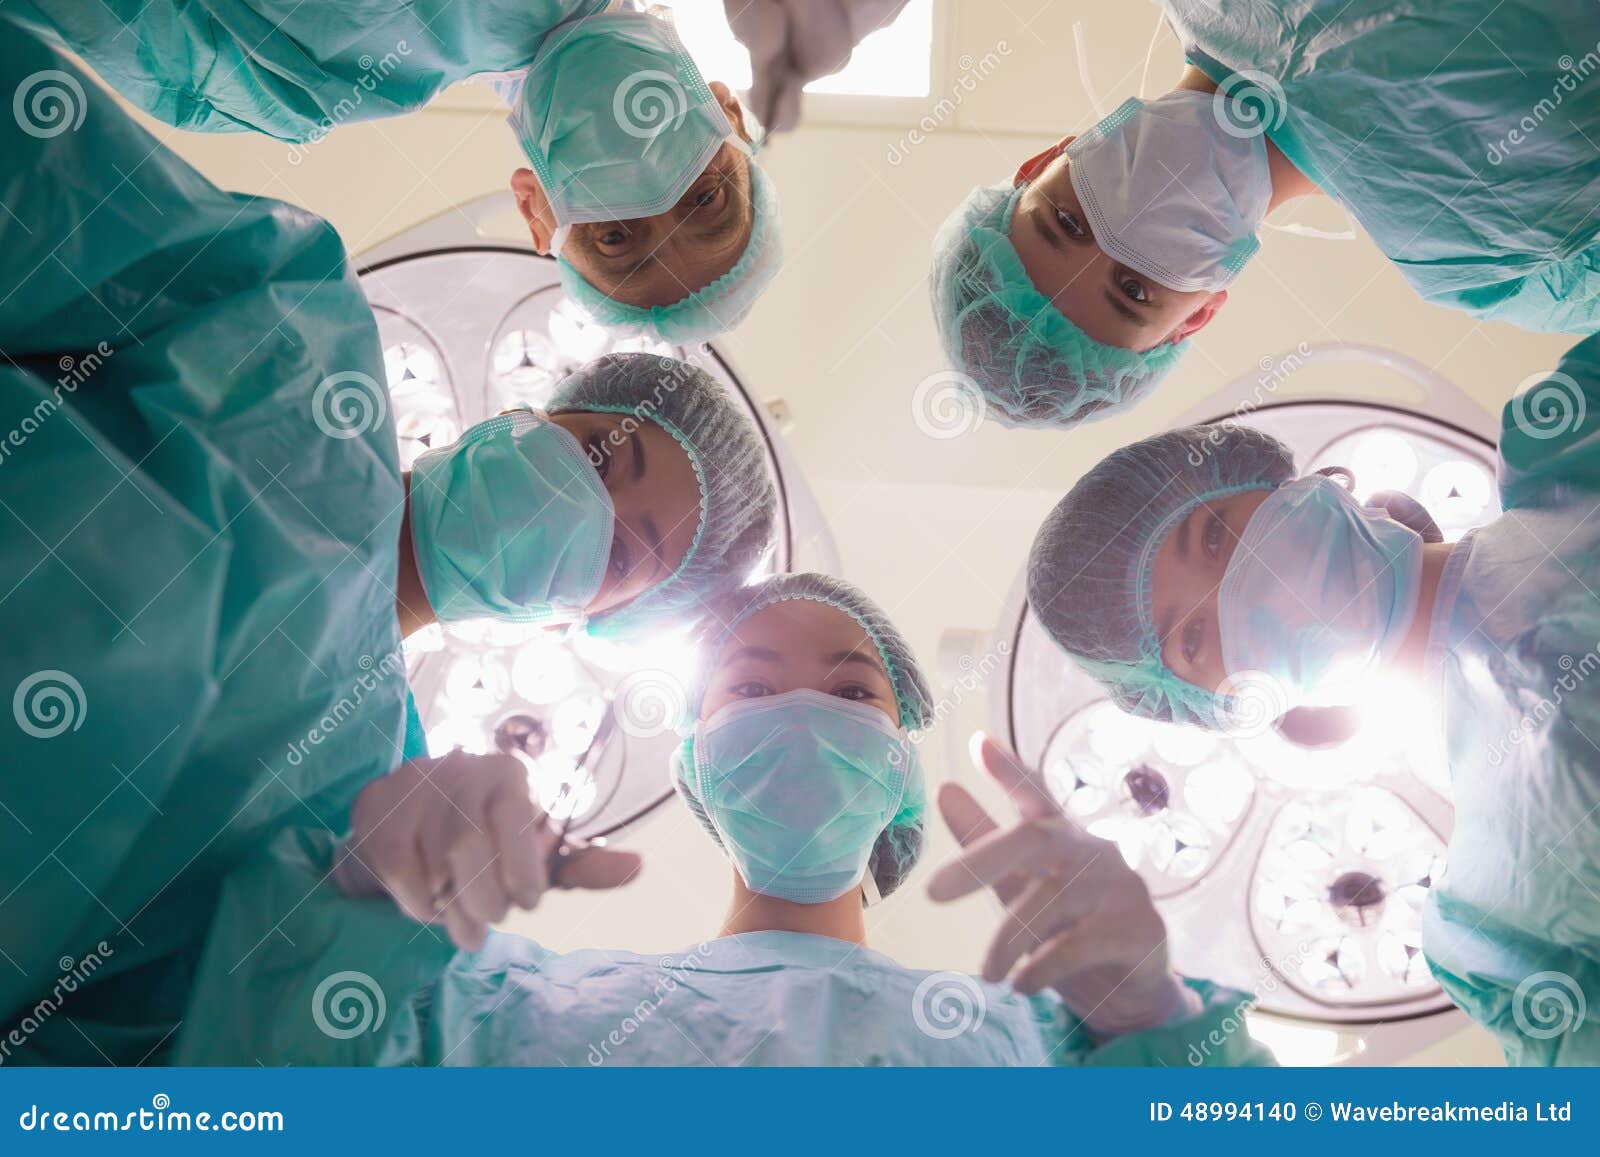 4 surgery. Студенты медики целевики. Общая хирургия студенты.